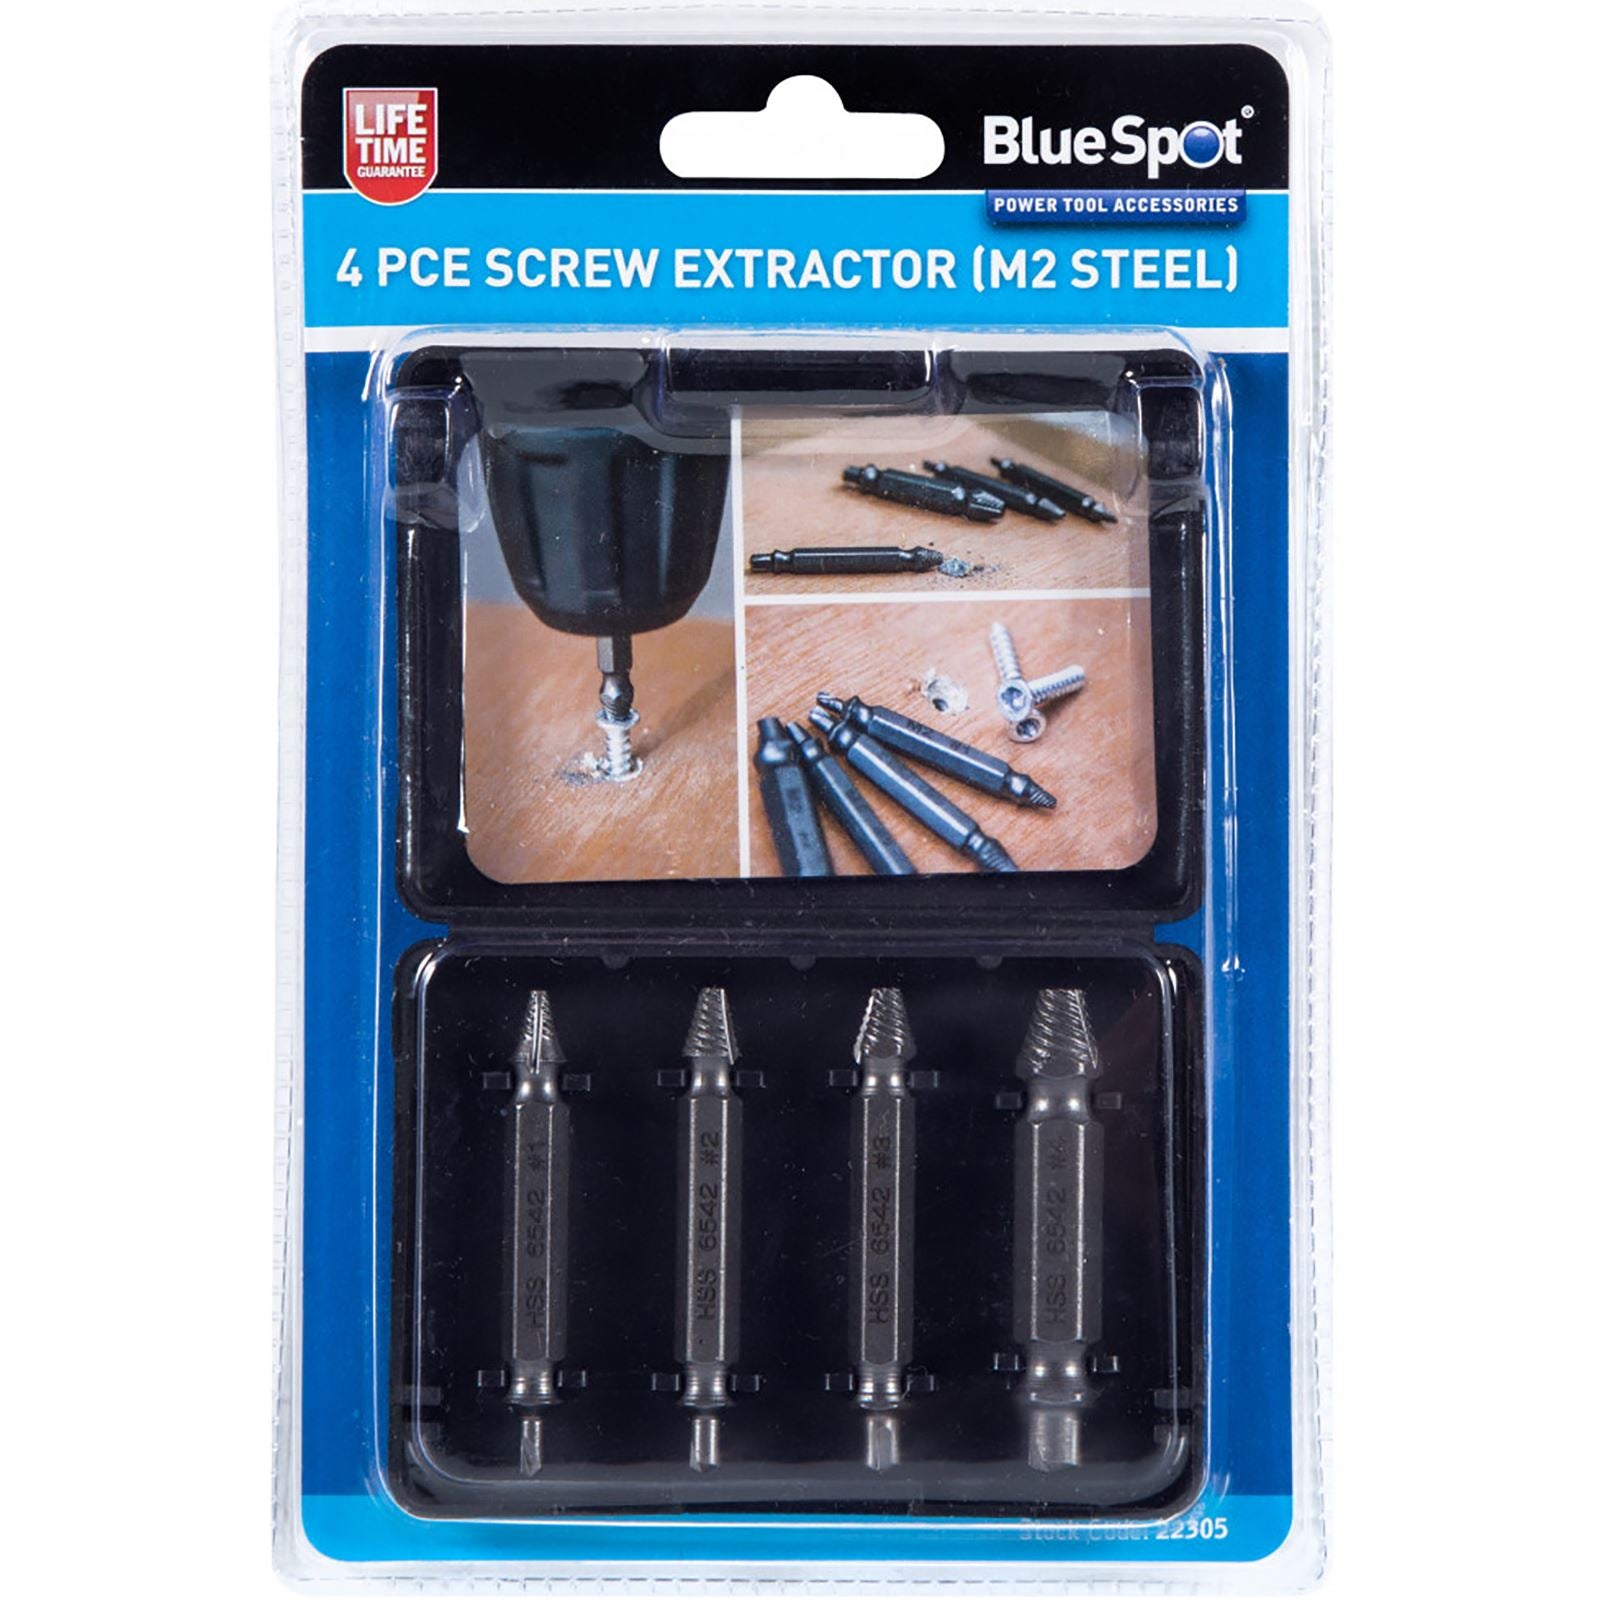 BlueSpot 4 Piece Screw Extractor 3-12mm (M2 Steel)